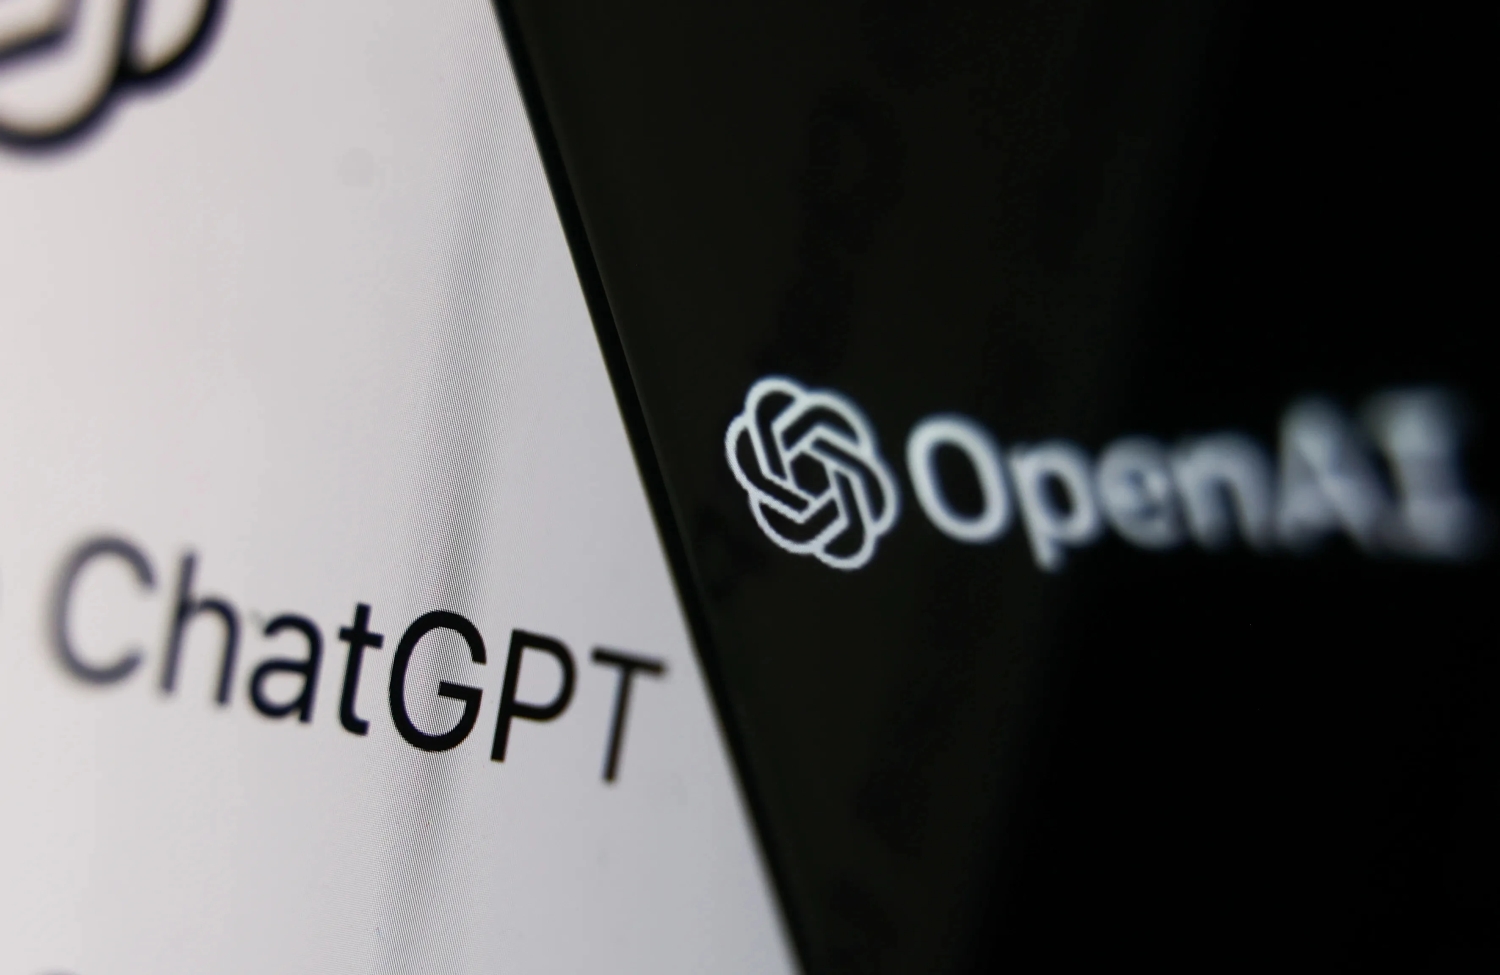 O nome ChatGPT ao lado de um logotipo OpenAI em um fundo preto e branco.